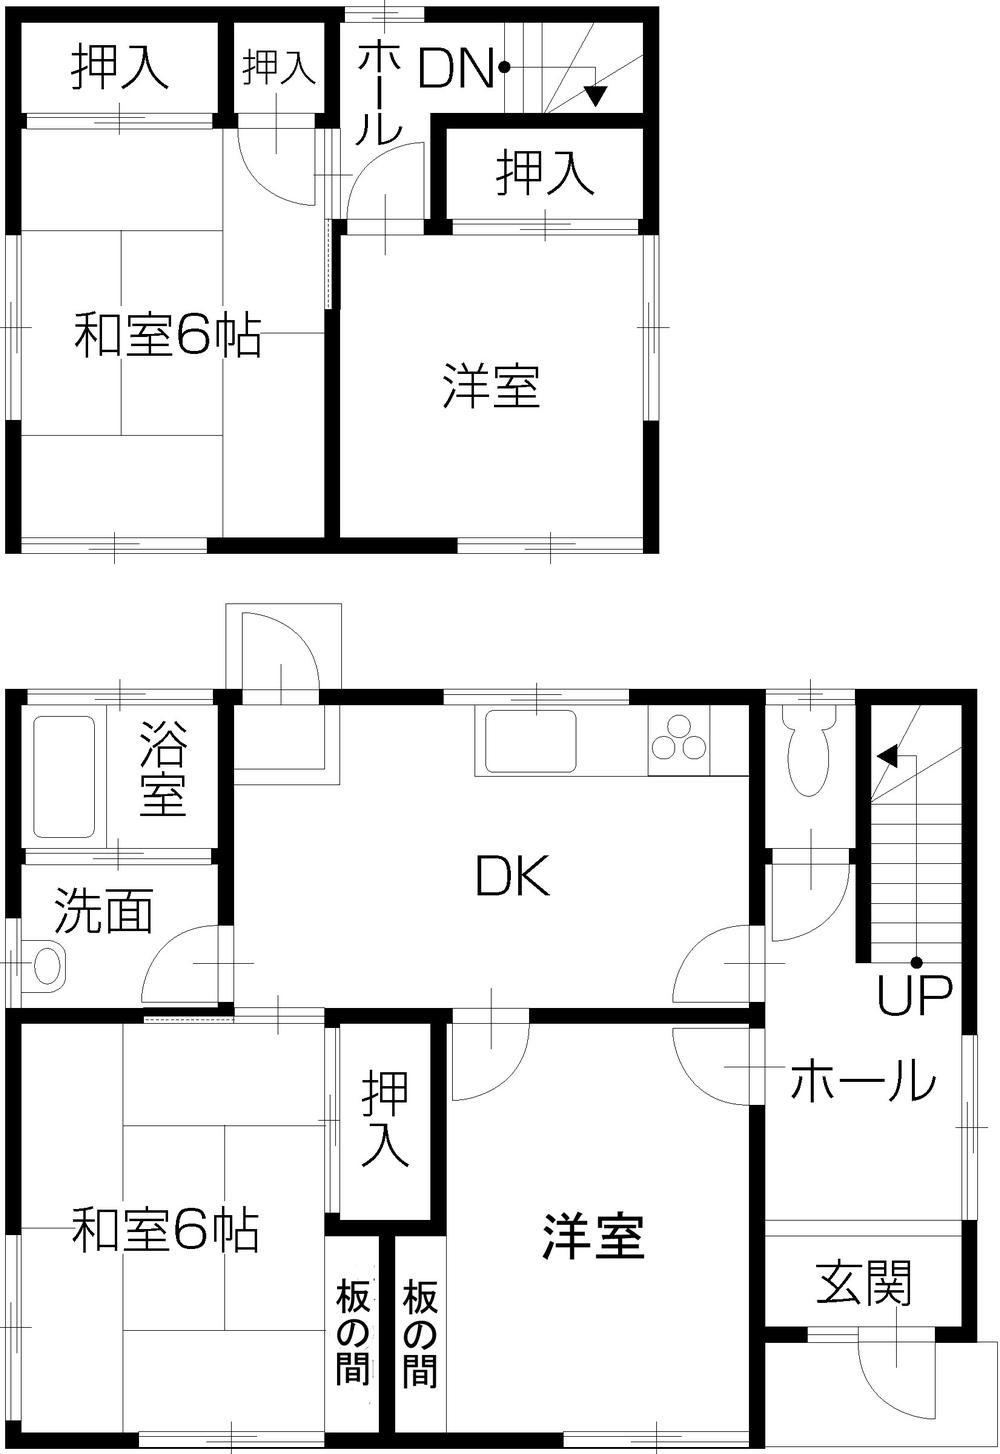 Floor plan. 11.8 million yen, 4DK, Land area 299.7 sq m , Building area 77.07 sq m